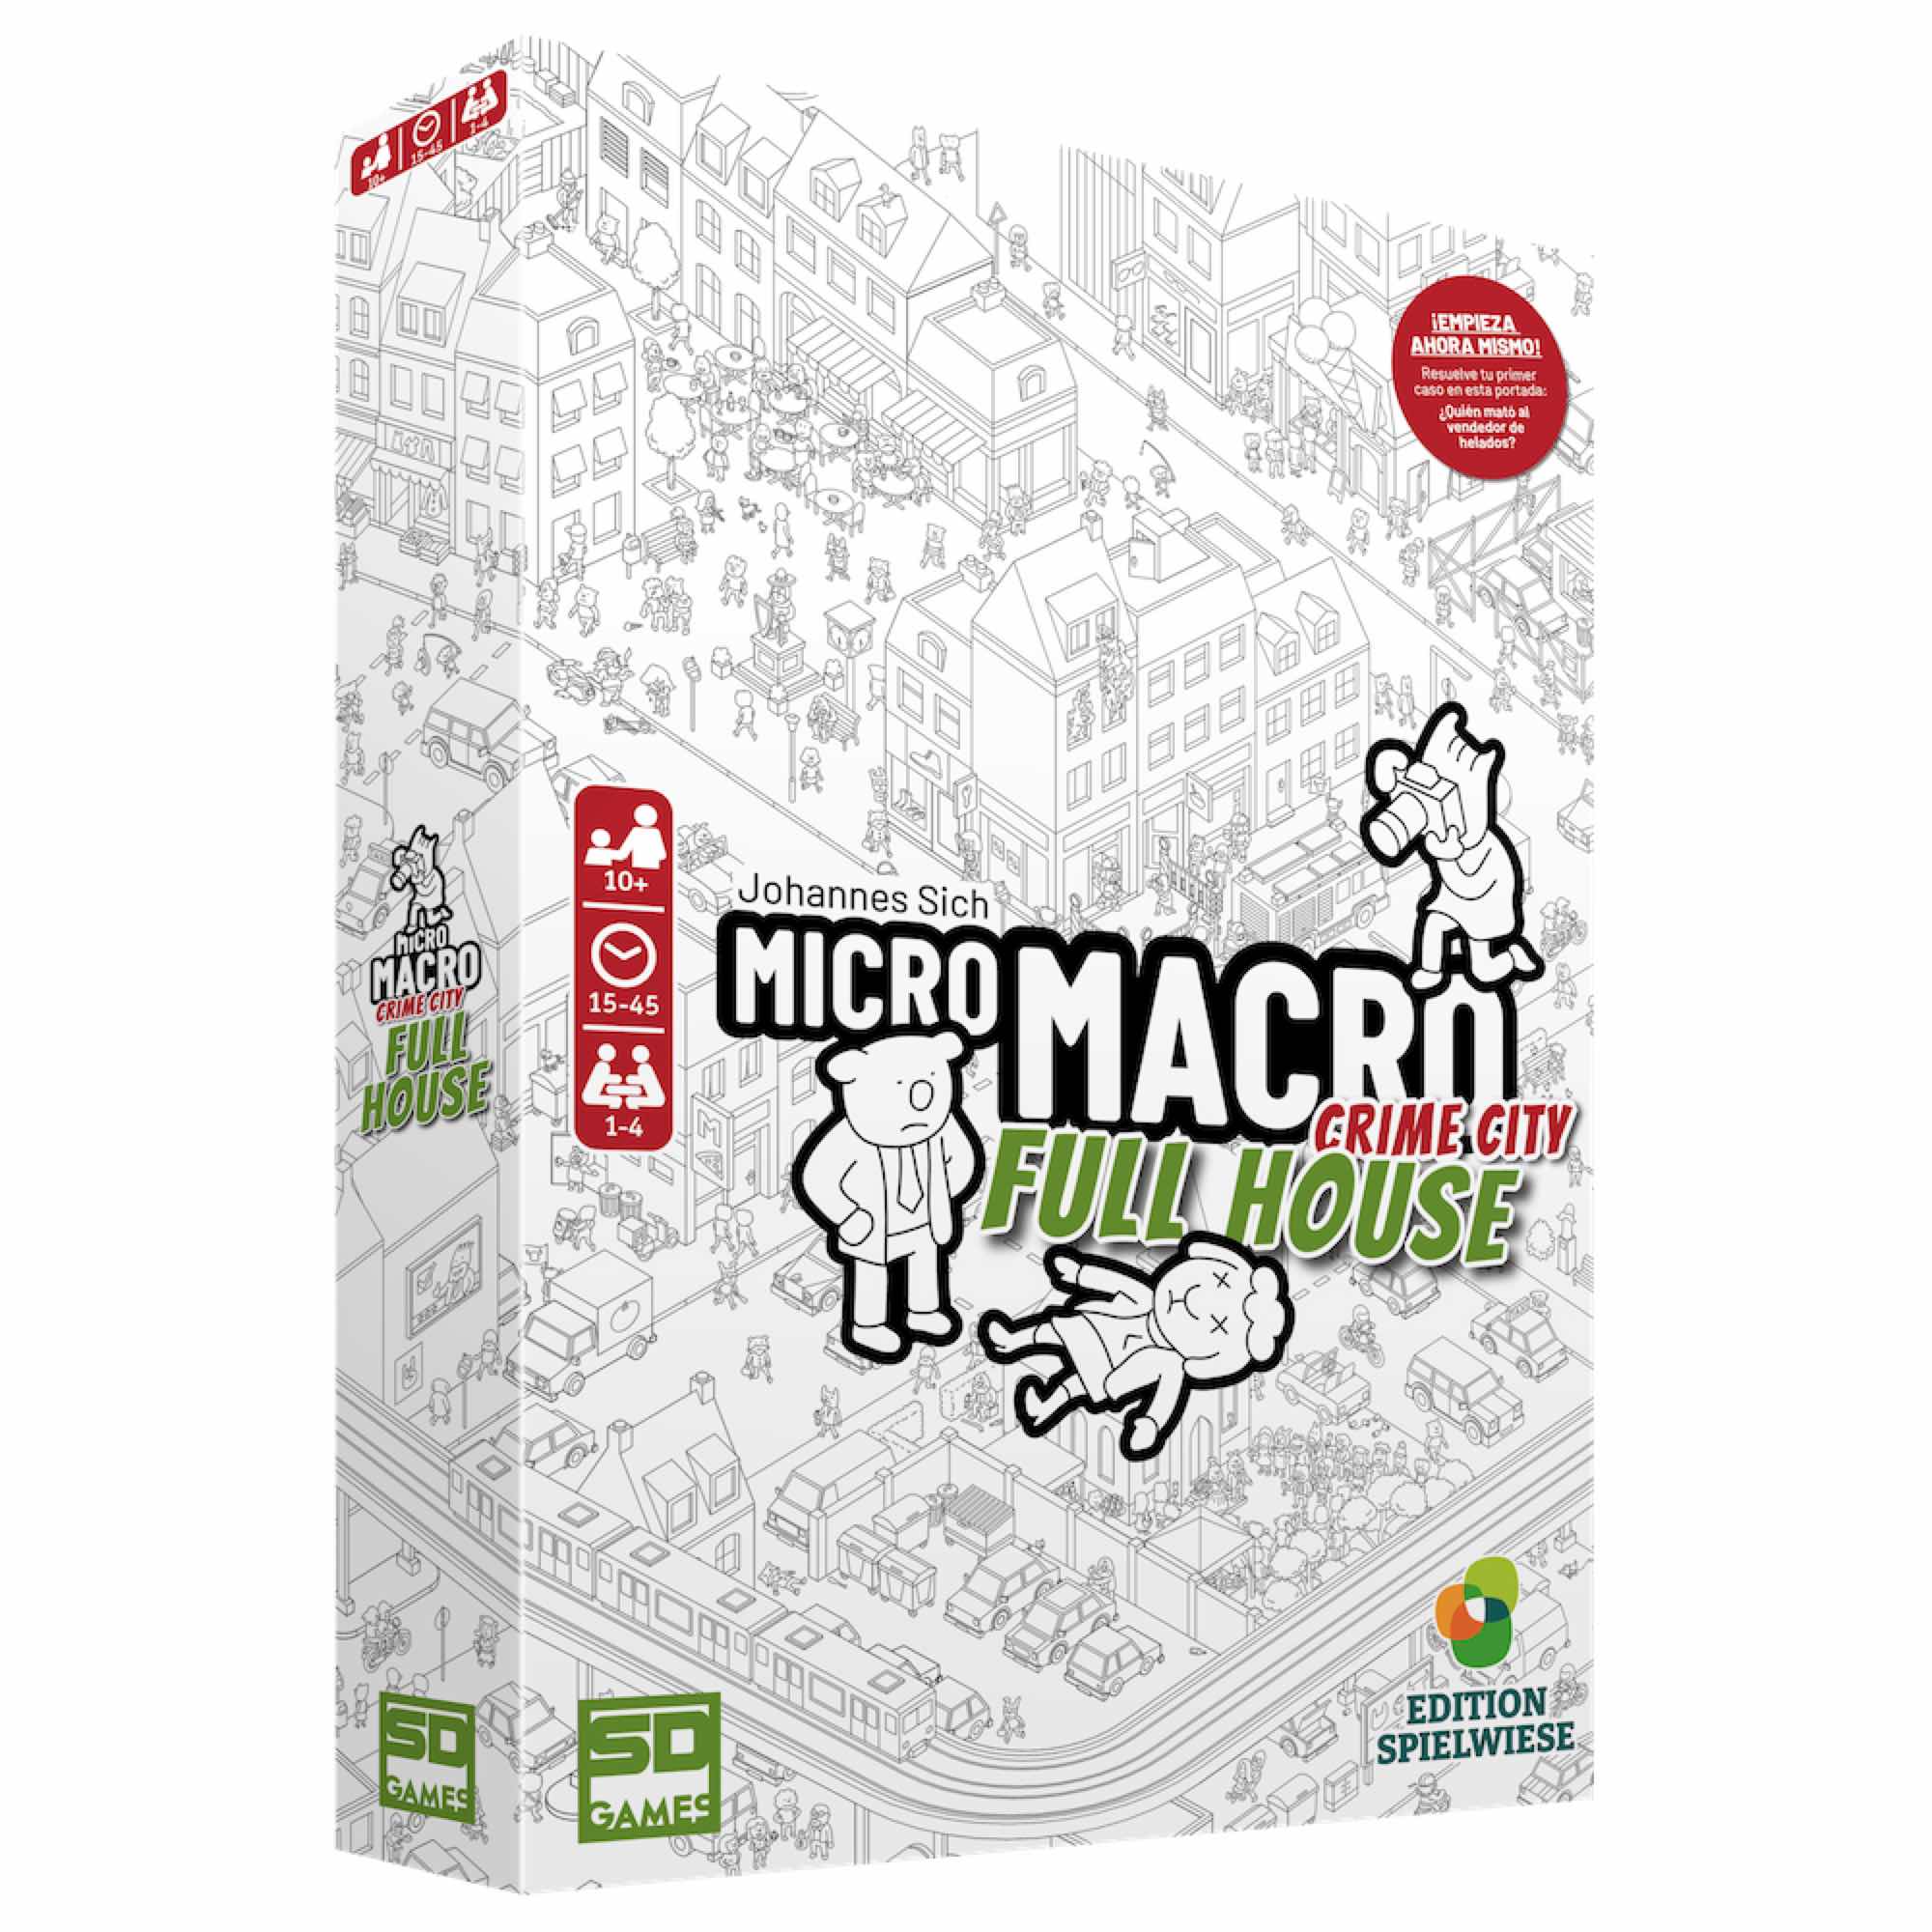 SD Games - SD Games Juego de Mesa Micro Macro Full House PEGI 10 - Nuevo Mapa de la Ciudad - 16 Nuevos Casos